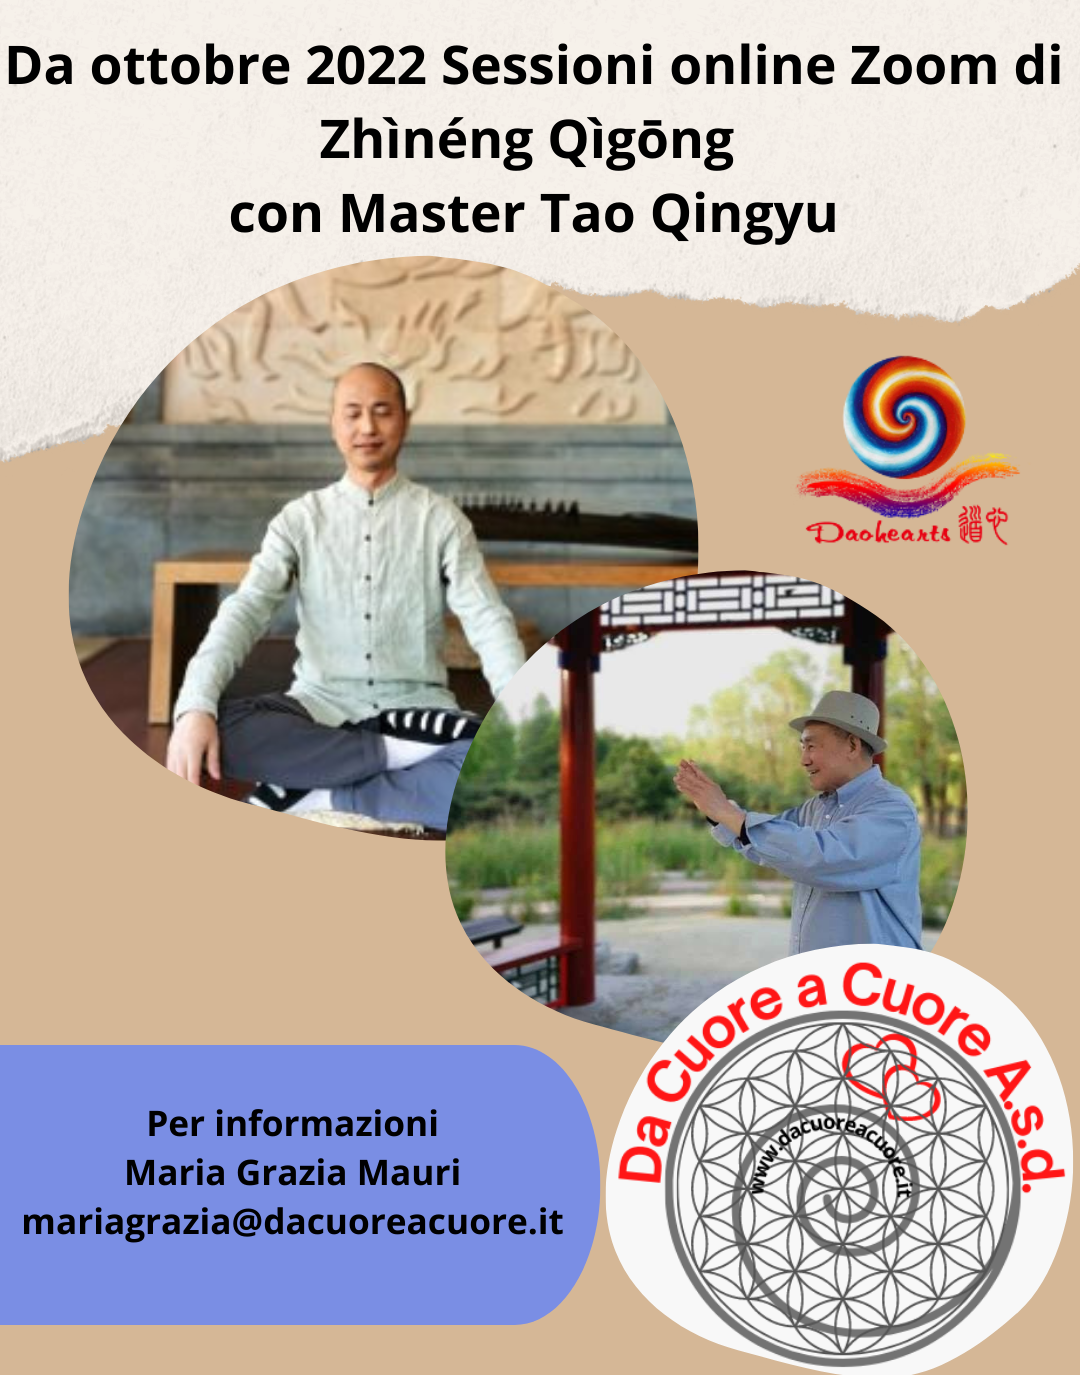 Zhineng Qigong ogni settimana con Master Tao Qingyu